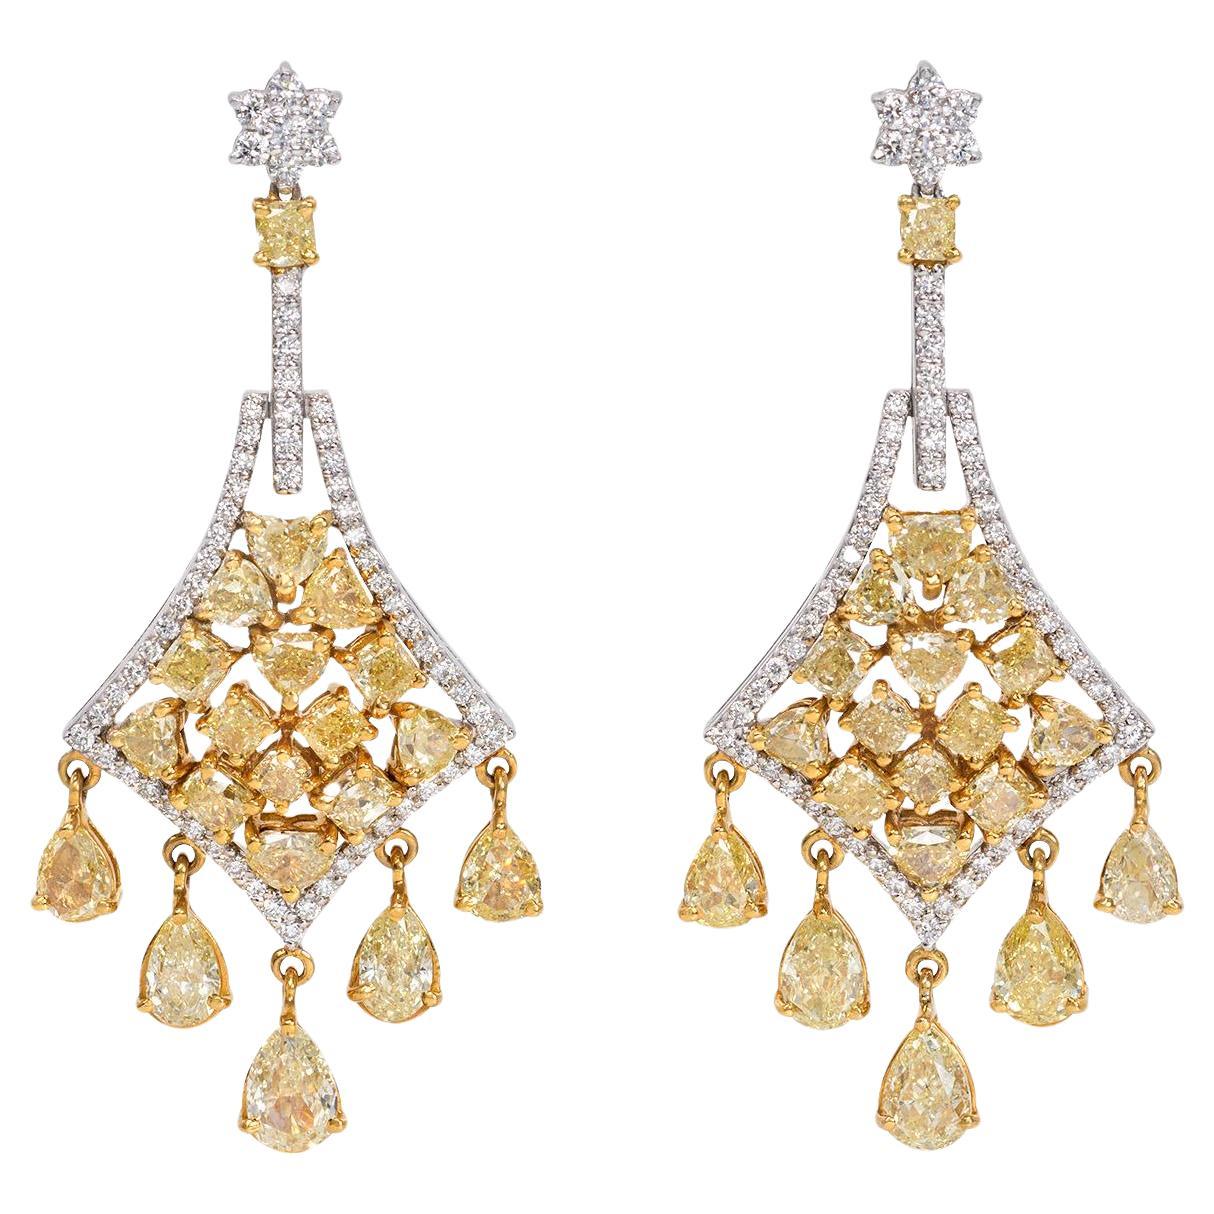 Avize Earrings - 6.81 Carat Yellow Diamond 18K White Gold For Sale